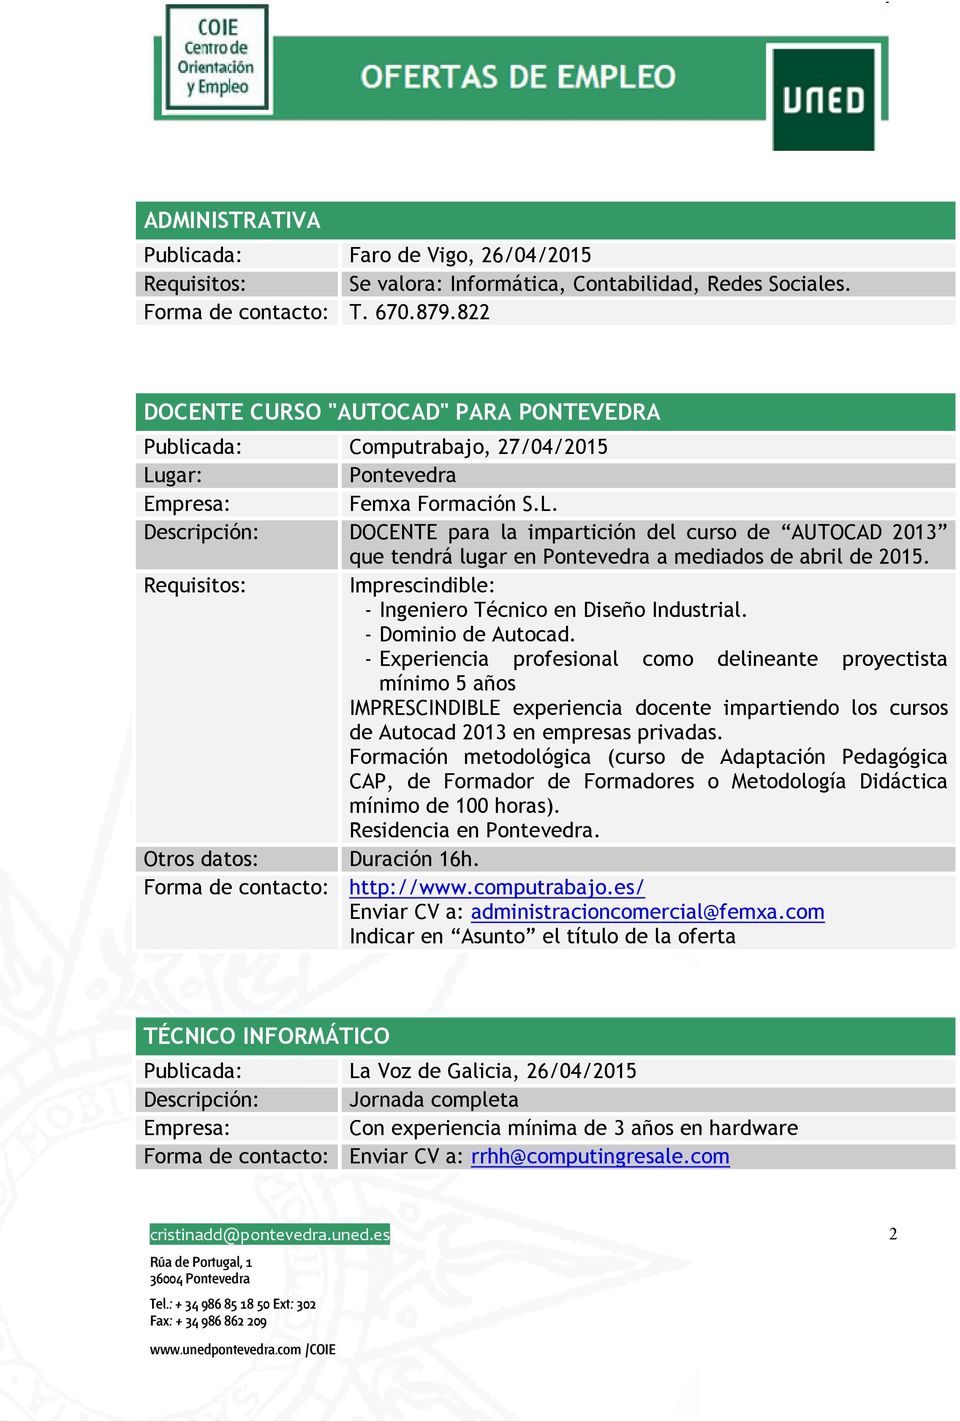 Descripción: DOCENTE para la impartición del curso de AUTOCAD 2013 que tendrá lugar en Pontevedra a mediados de abril de 2015. Requisitos: Imprescindible: - Ingeniero Técnico en Diseño Industrial.